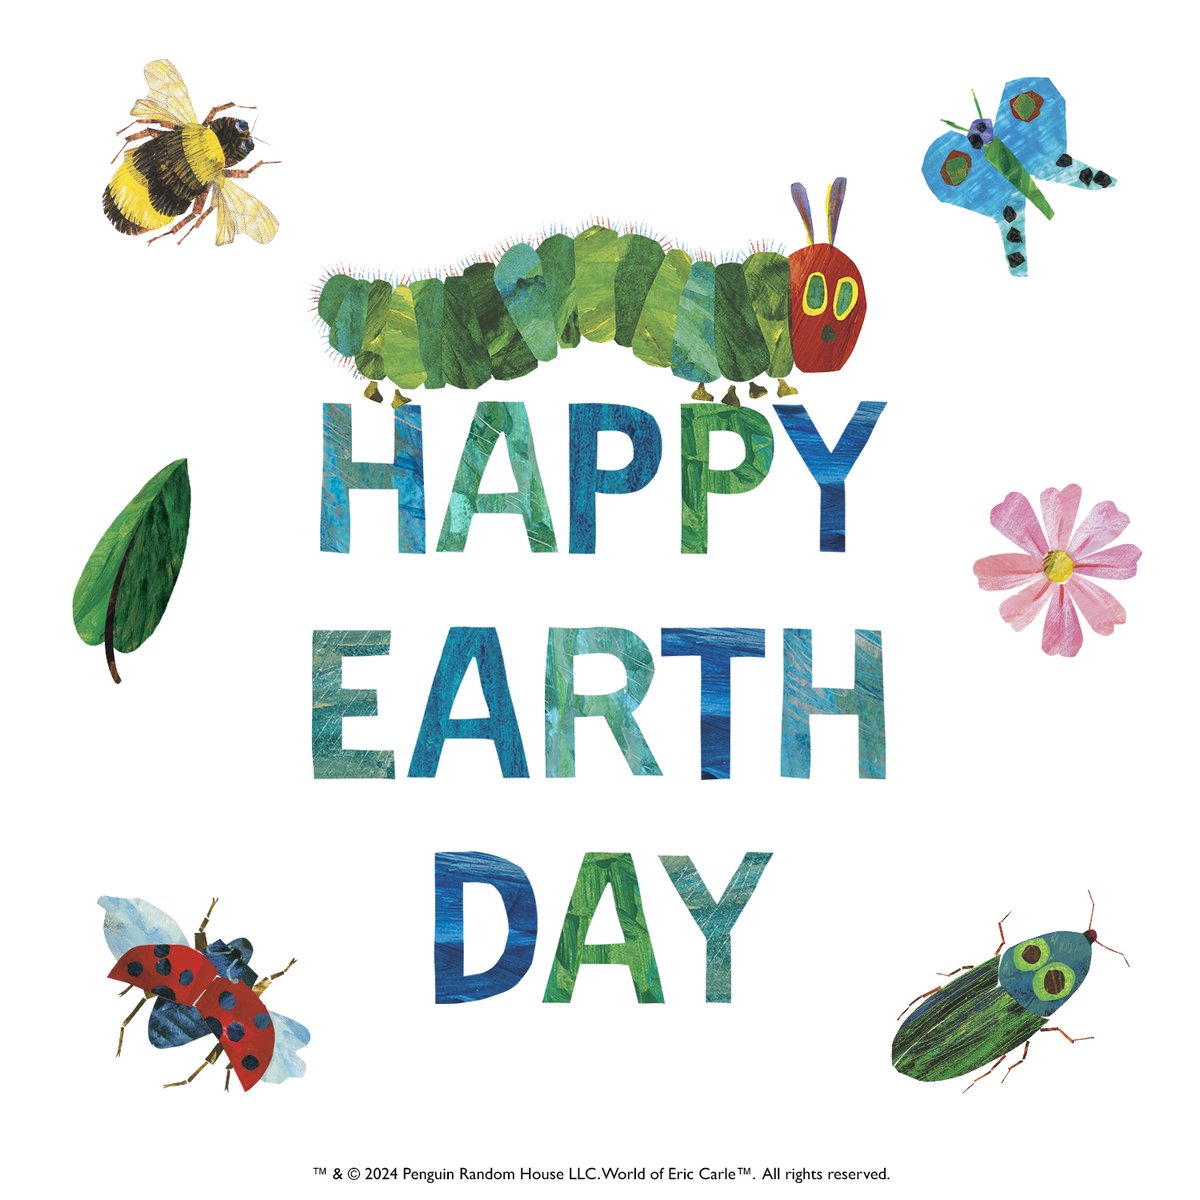 本日4月22日は「#アースデイ（Earth Day）」です。

#エリックカール #エリックカールの世界 #はらぺこあおむし #ericcarle #EarthDay

™ & © 2024 Penguin Random House LLC. All rights reserved.